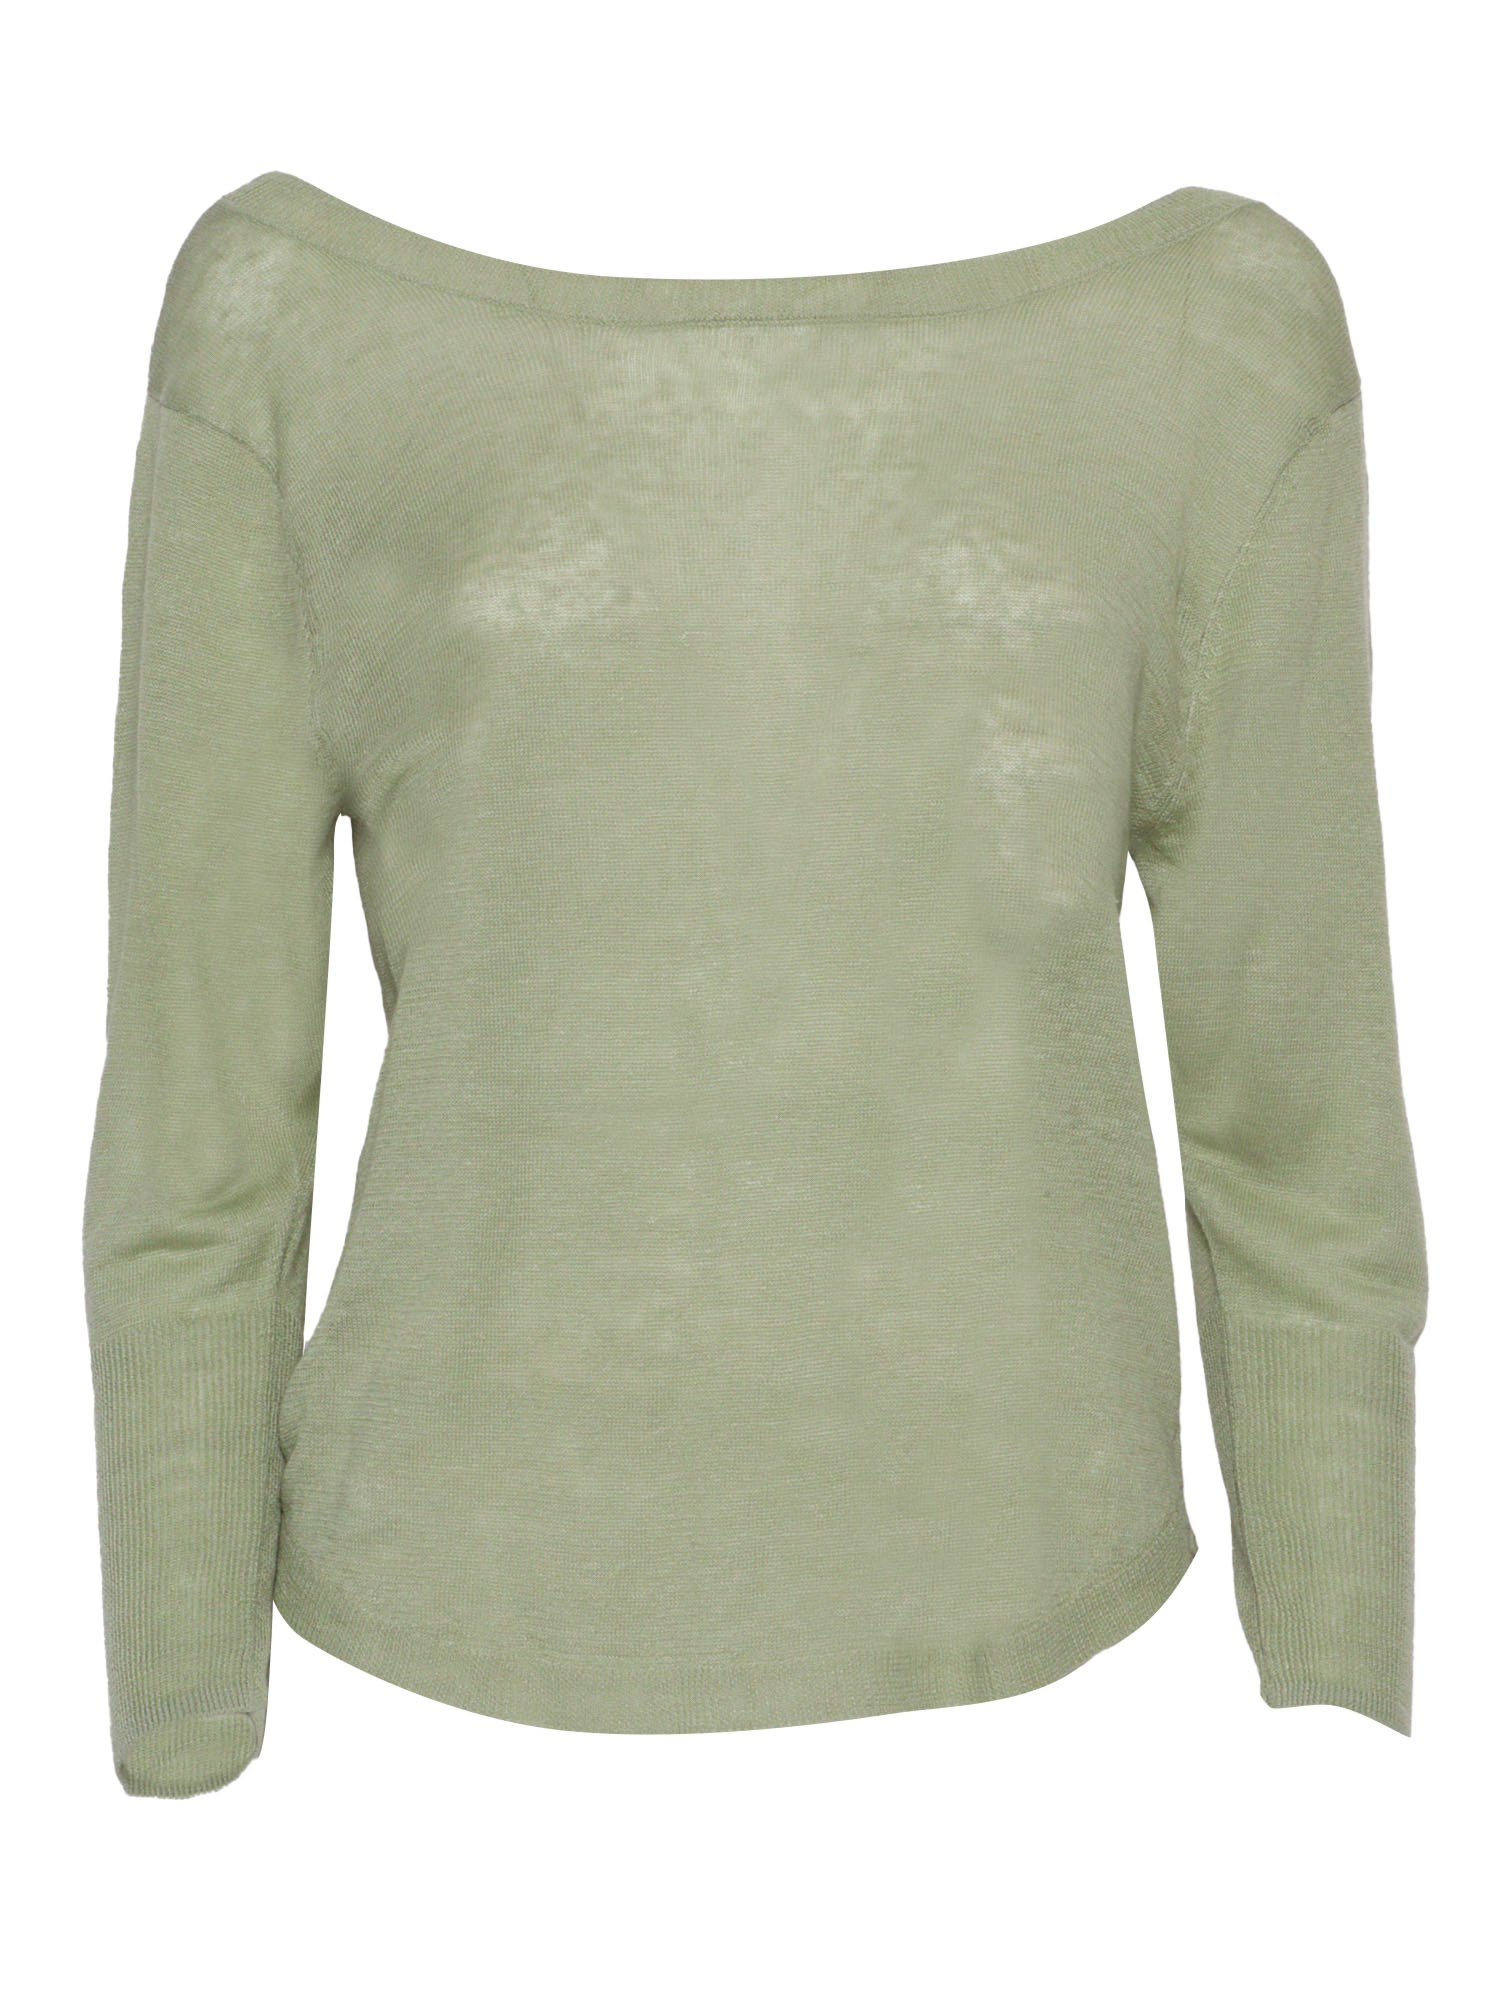 Shop Filatures Du Lion Green Linen Sweater